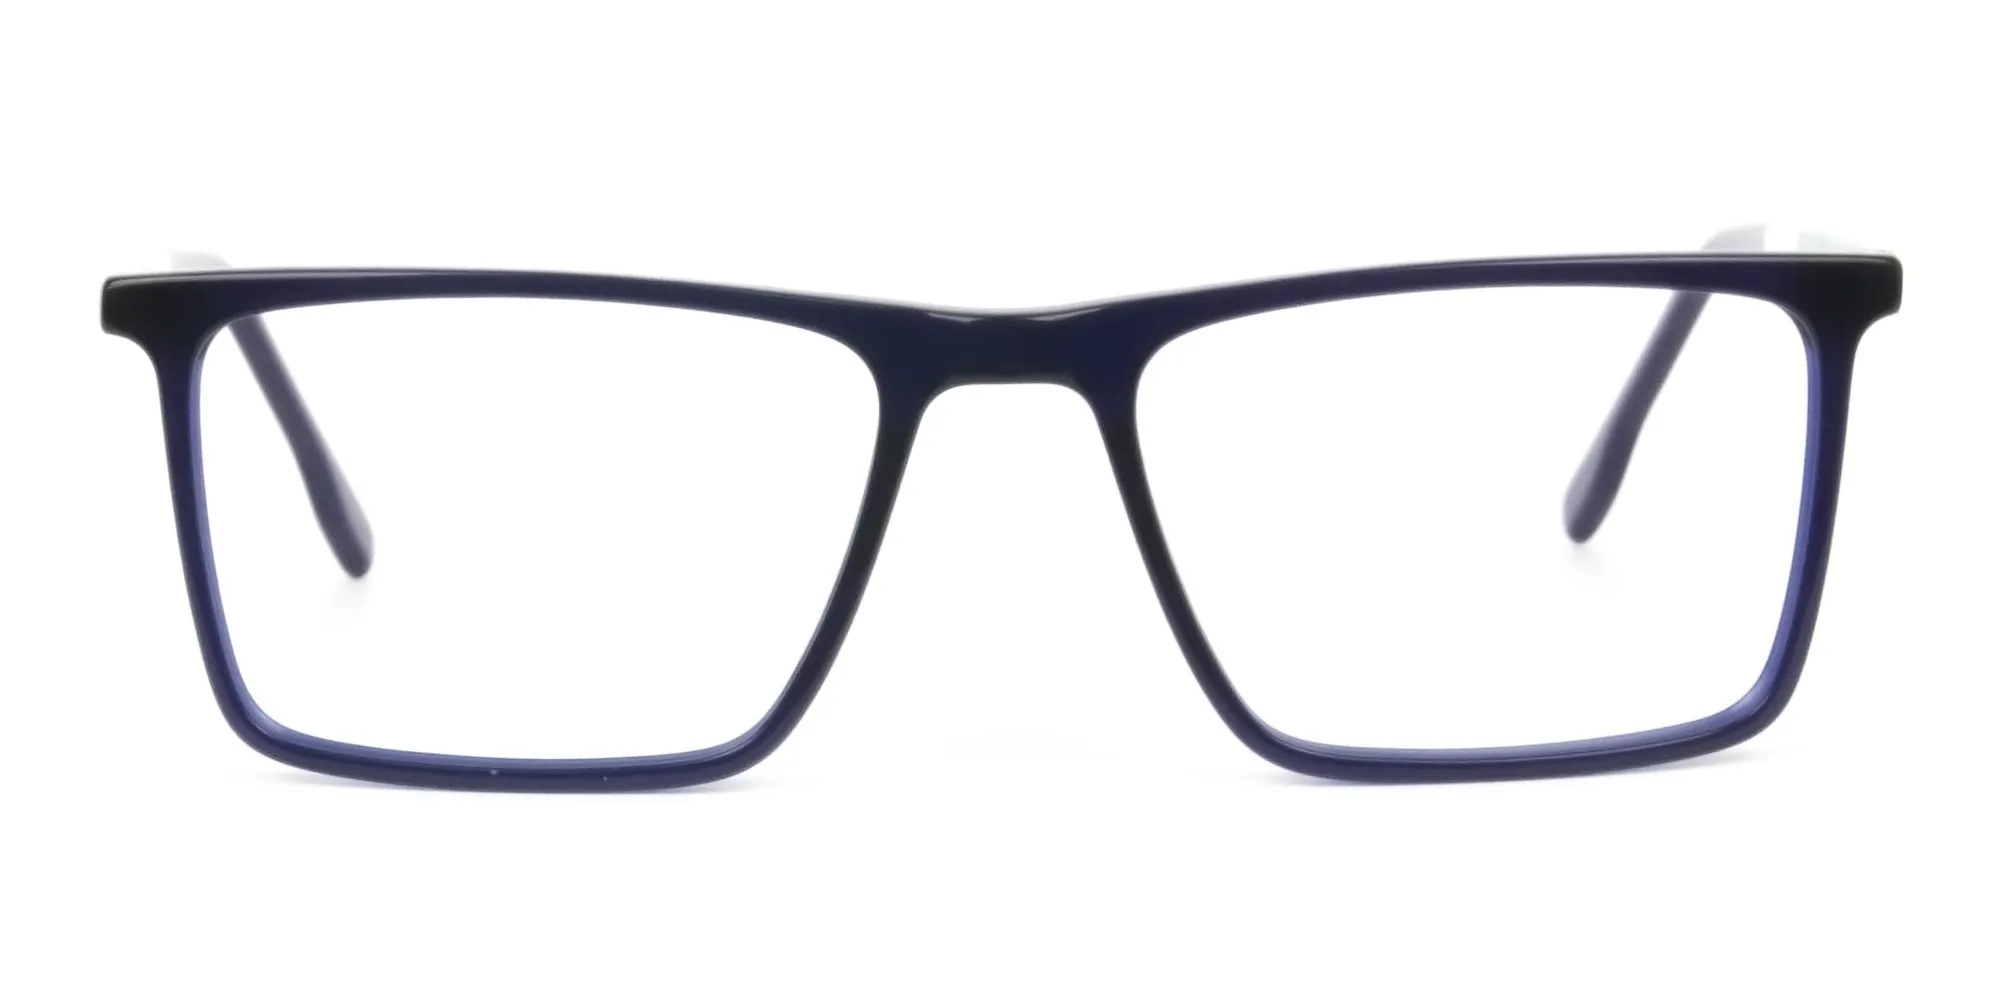 Blue & Green Rectangular Glasses - 2